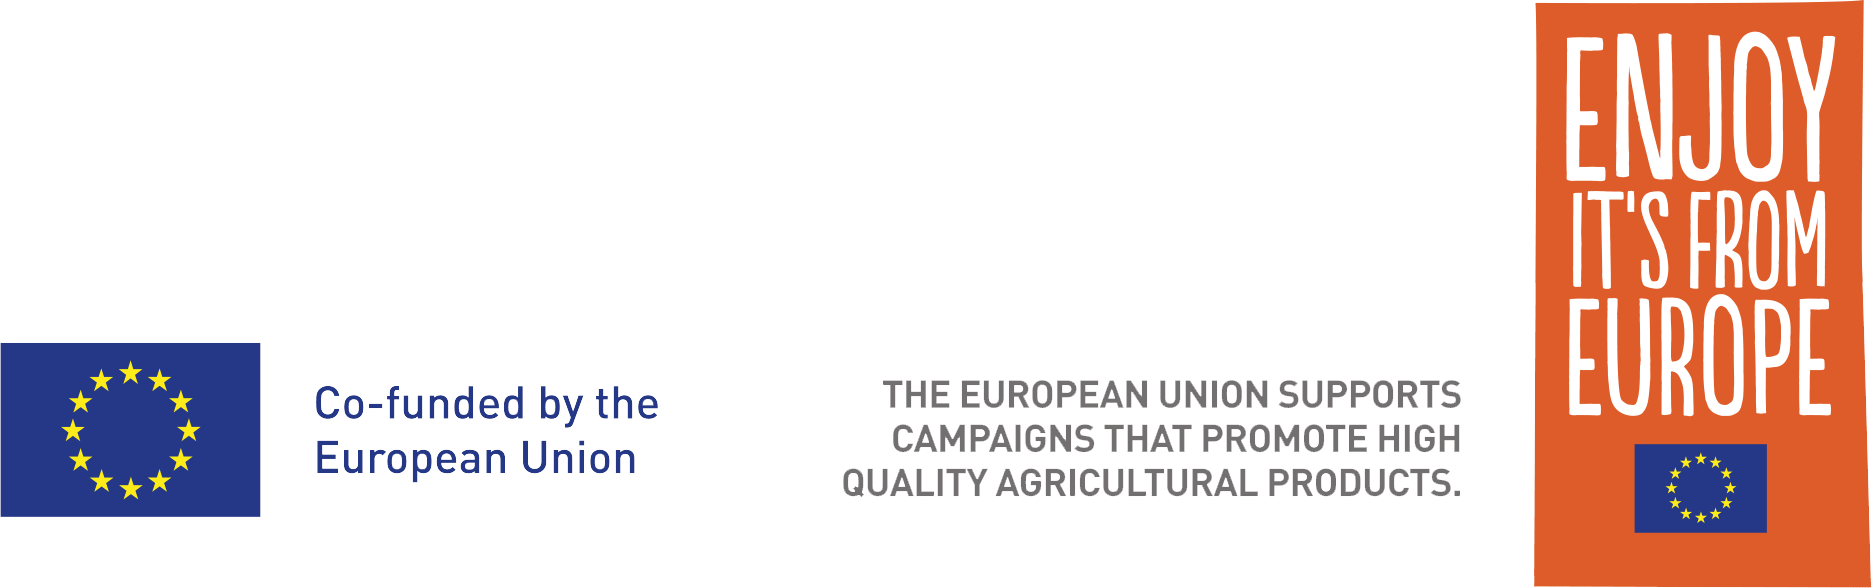 europ-union-logo